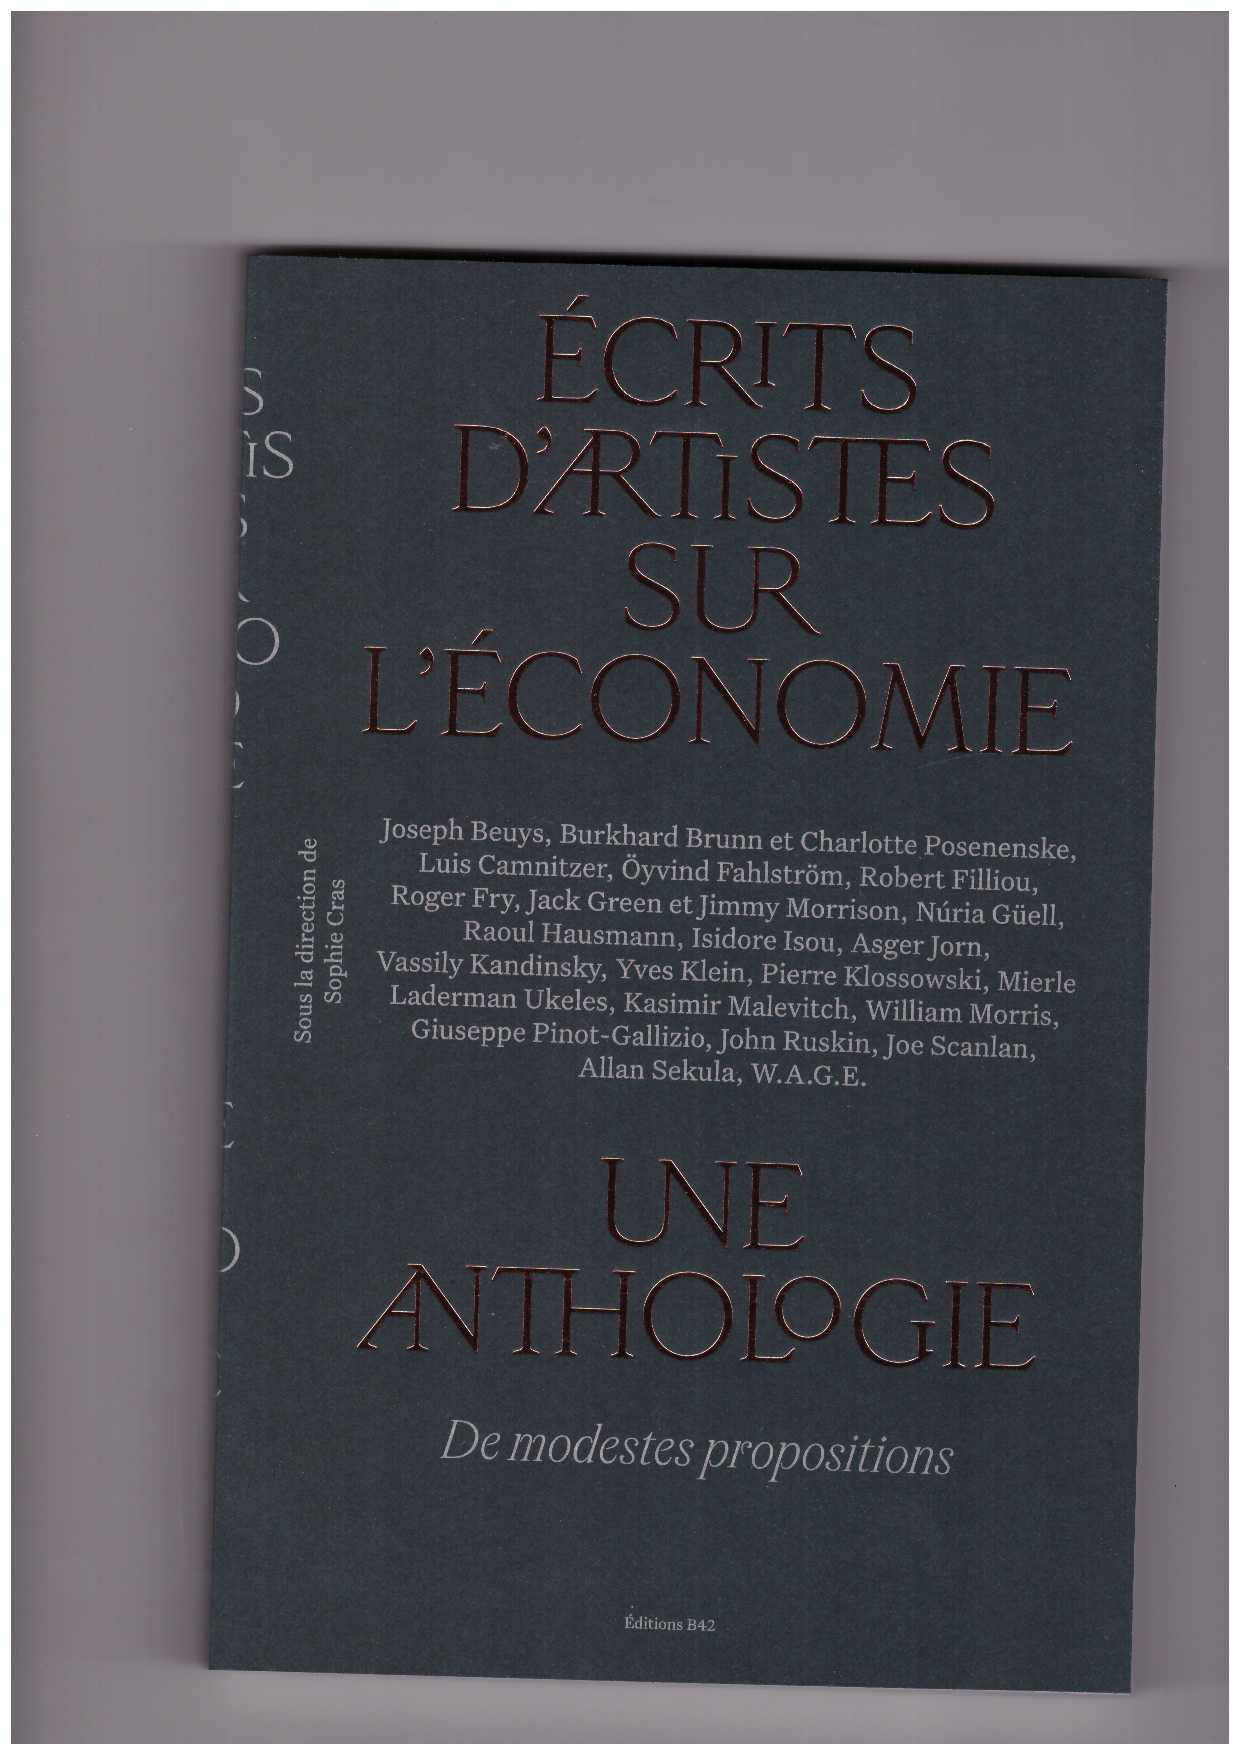 CRAS, Sophie (ed.) - Écrits d’artistes sur l’économie, une anthologie